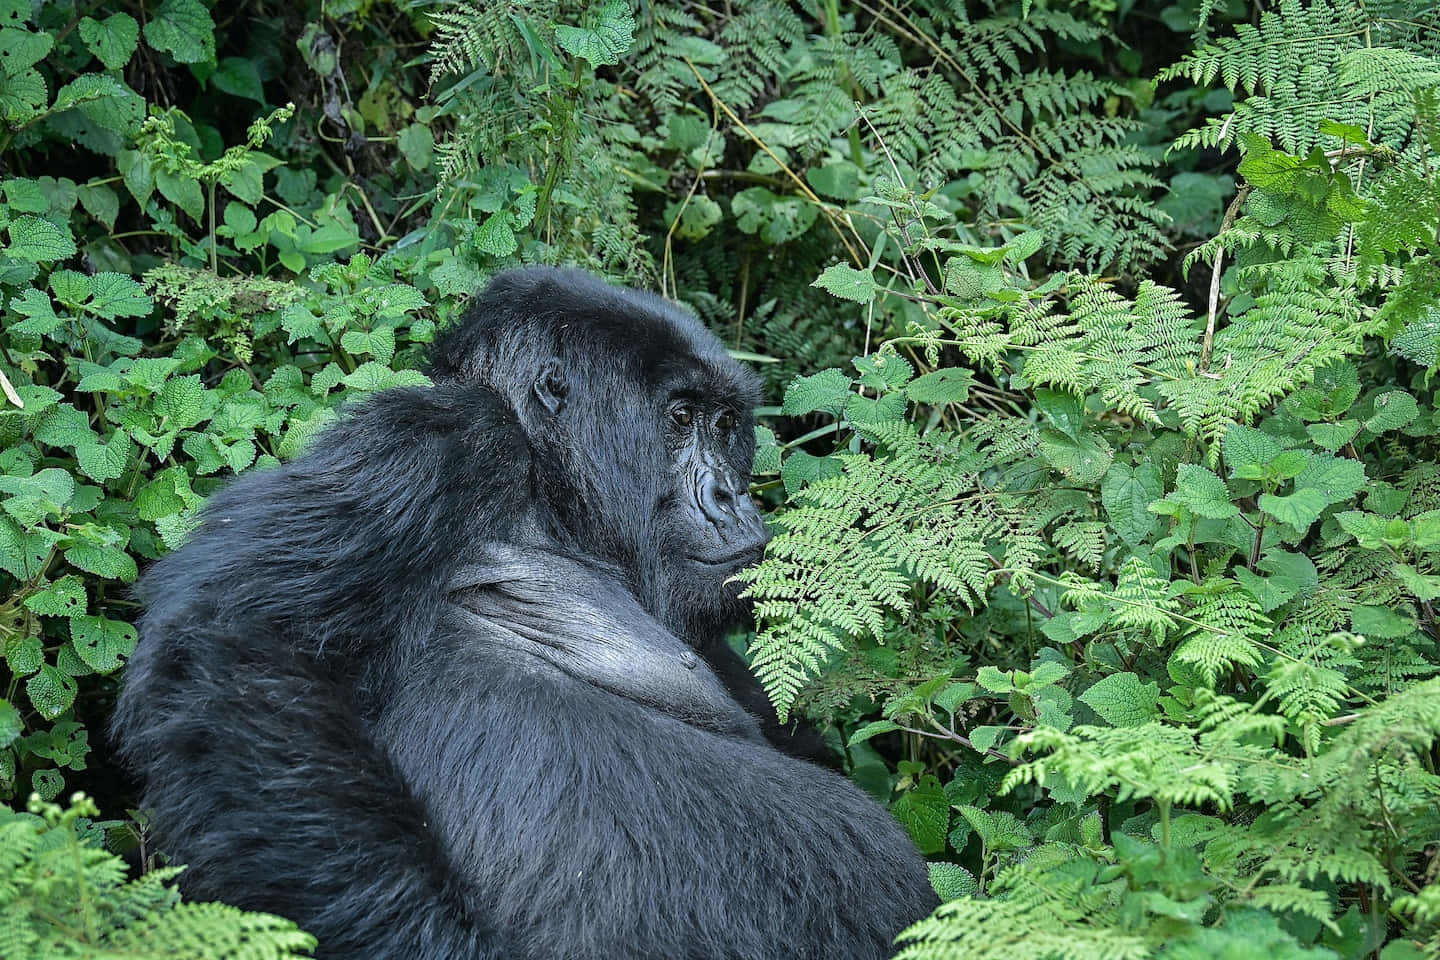 A gorilla in its natural habitat